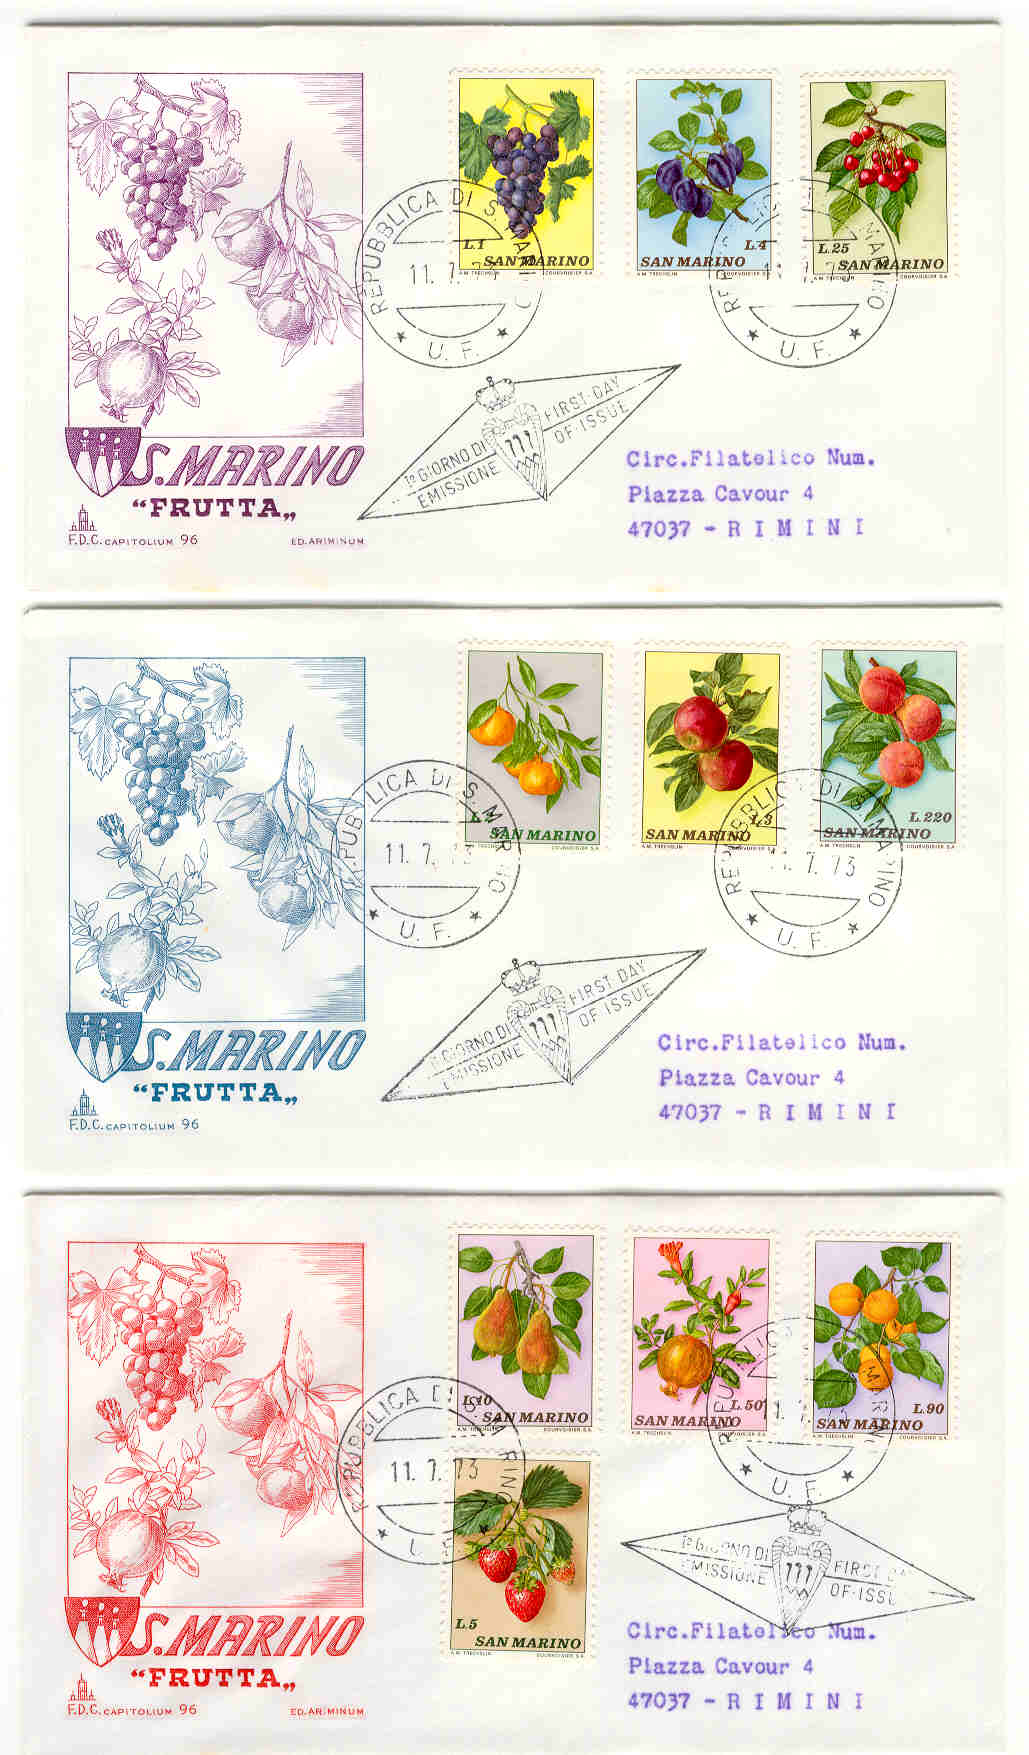 10221 - San Marino - 3 buste fdc con serie completa Frutta